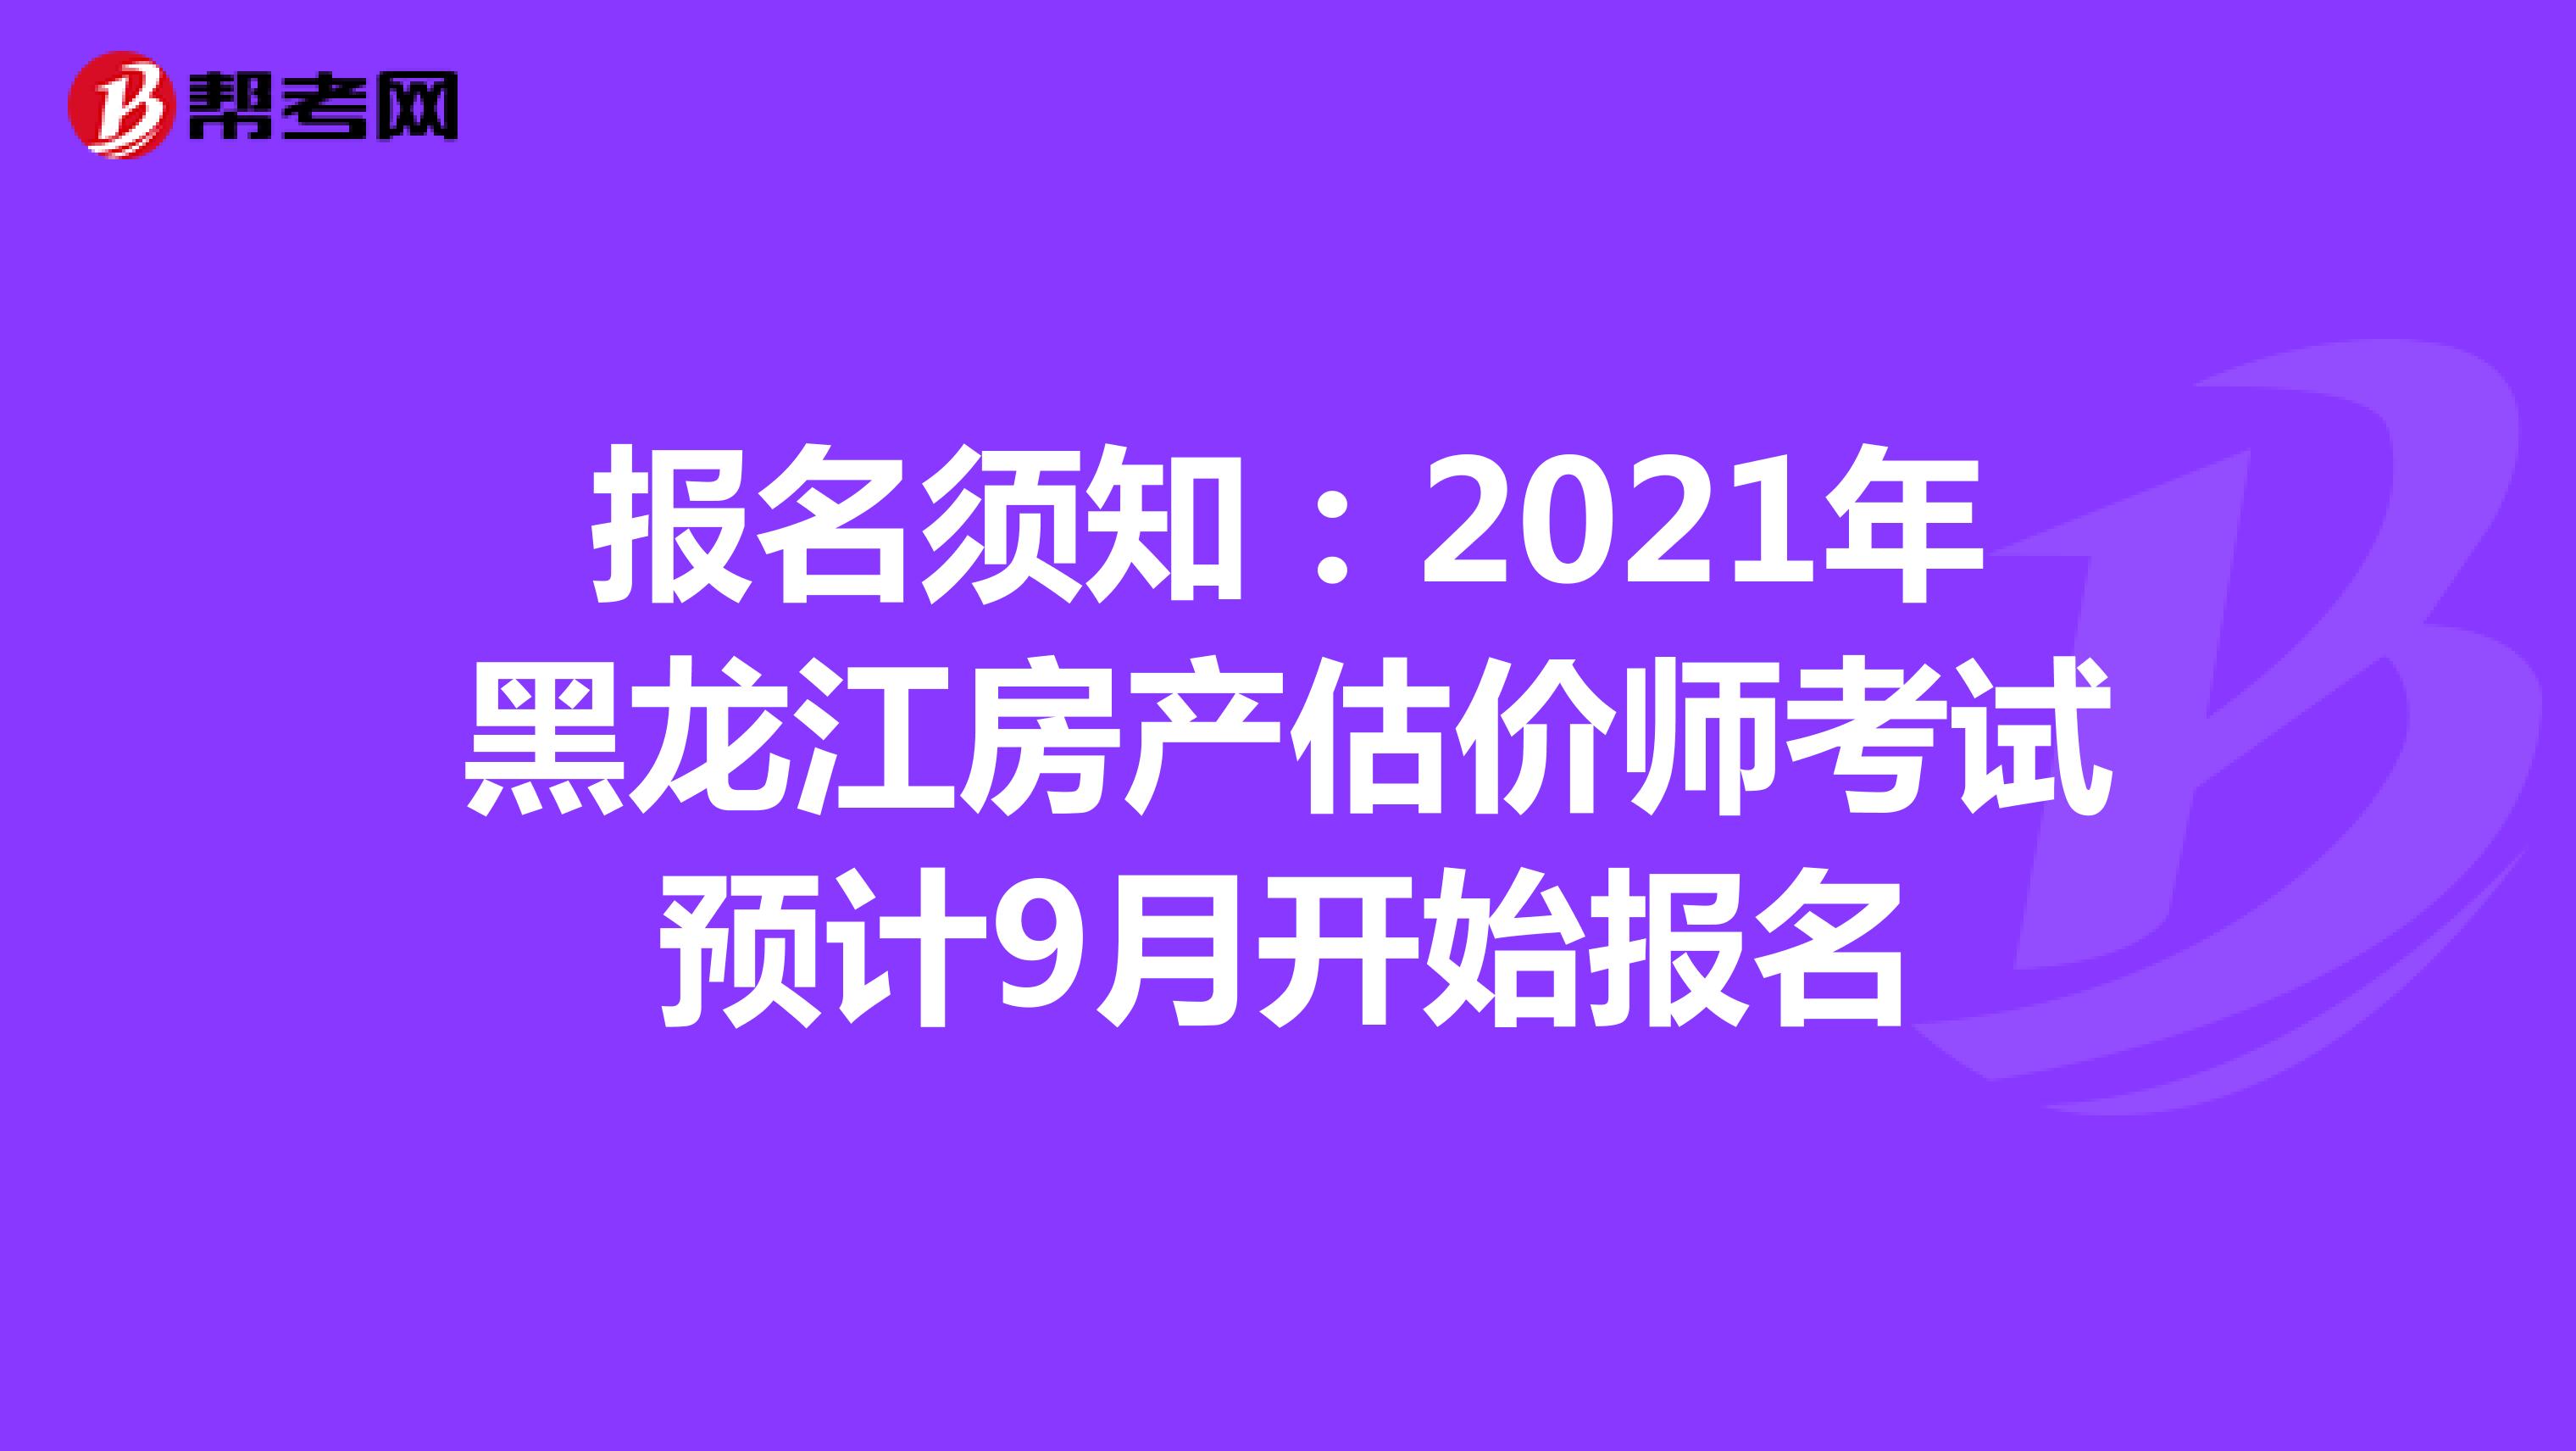 报名须知：2021年黑龙江房产估价师考试预计9月开始报名